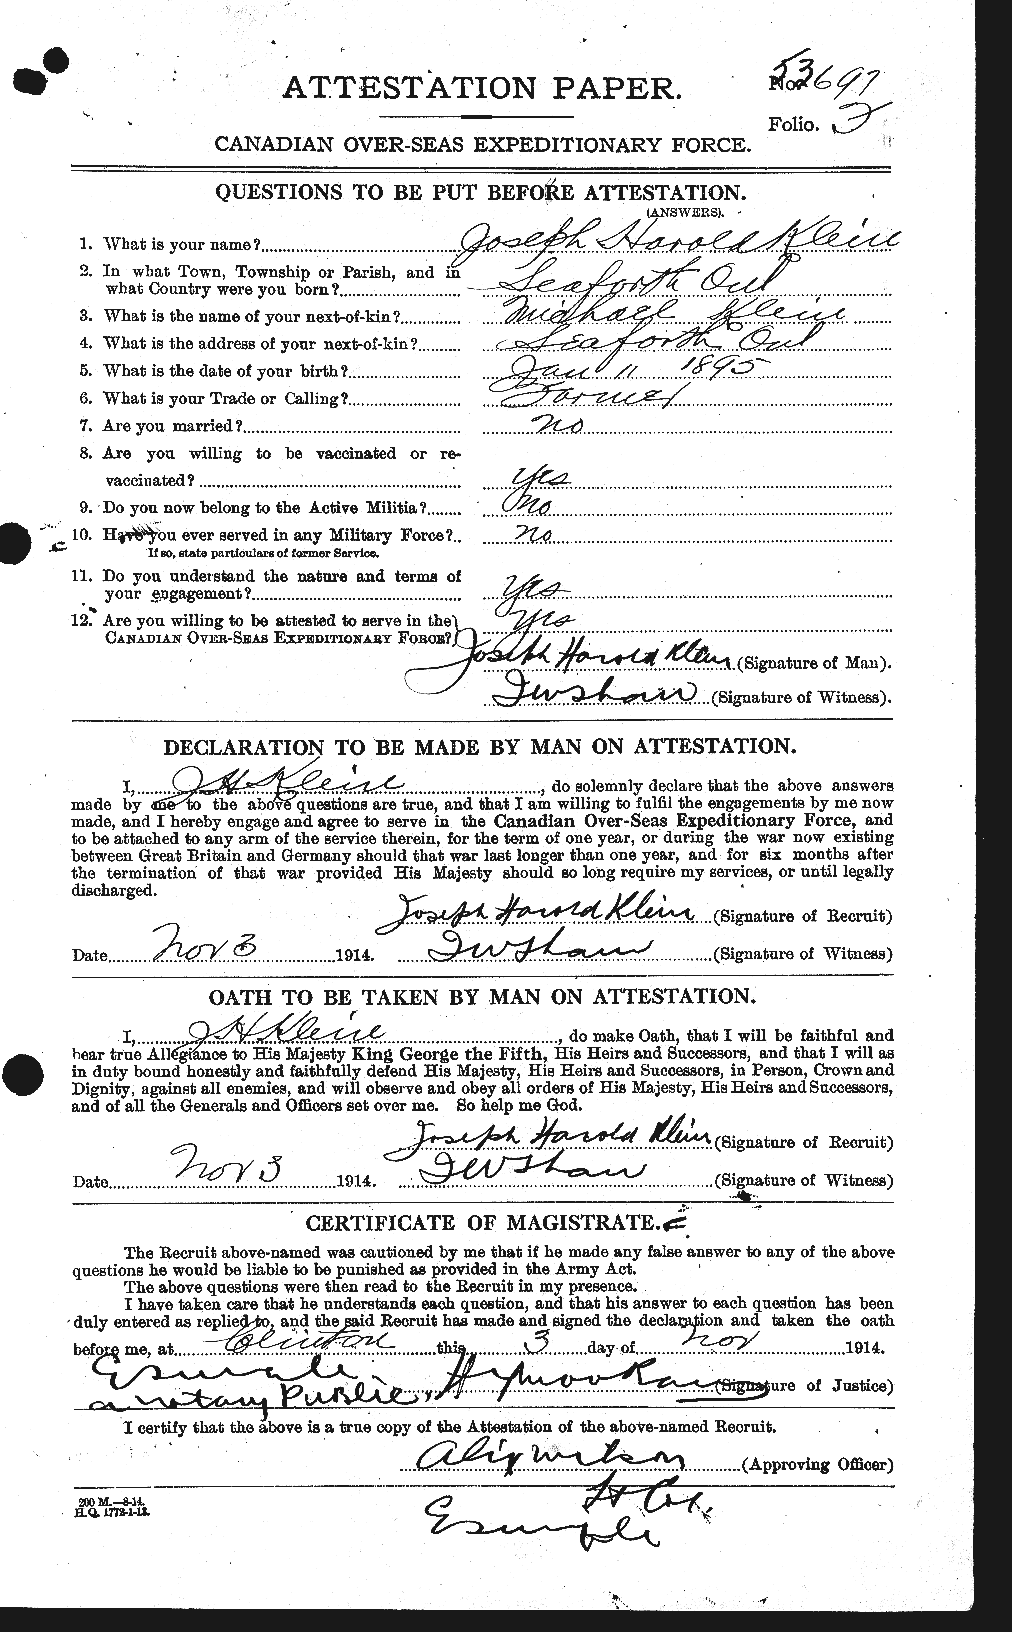 Dossiers du Personnel de la Première Guerre mondiale - CEC 438767a